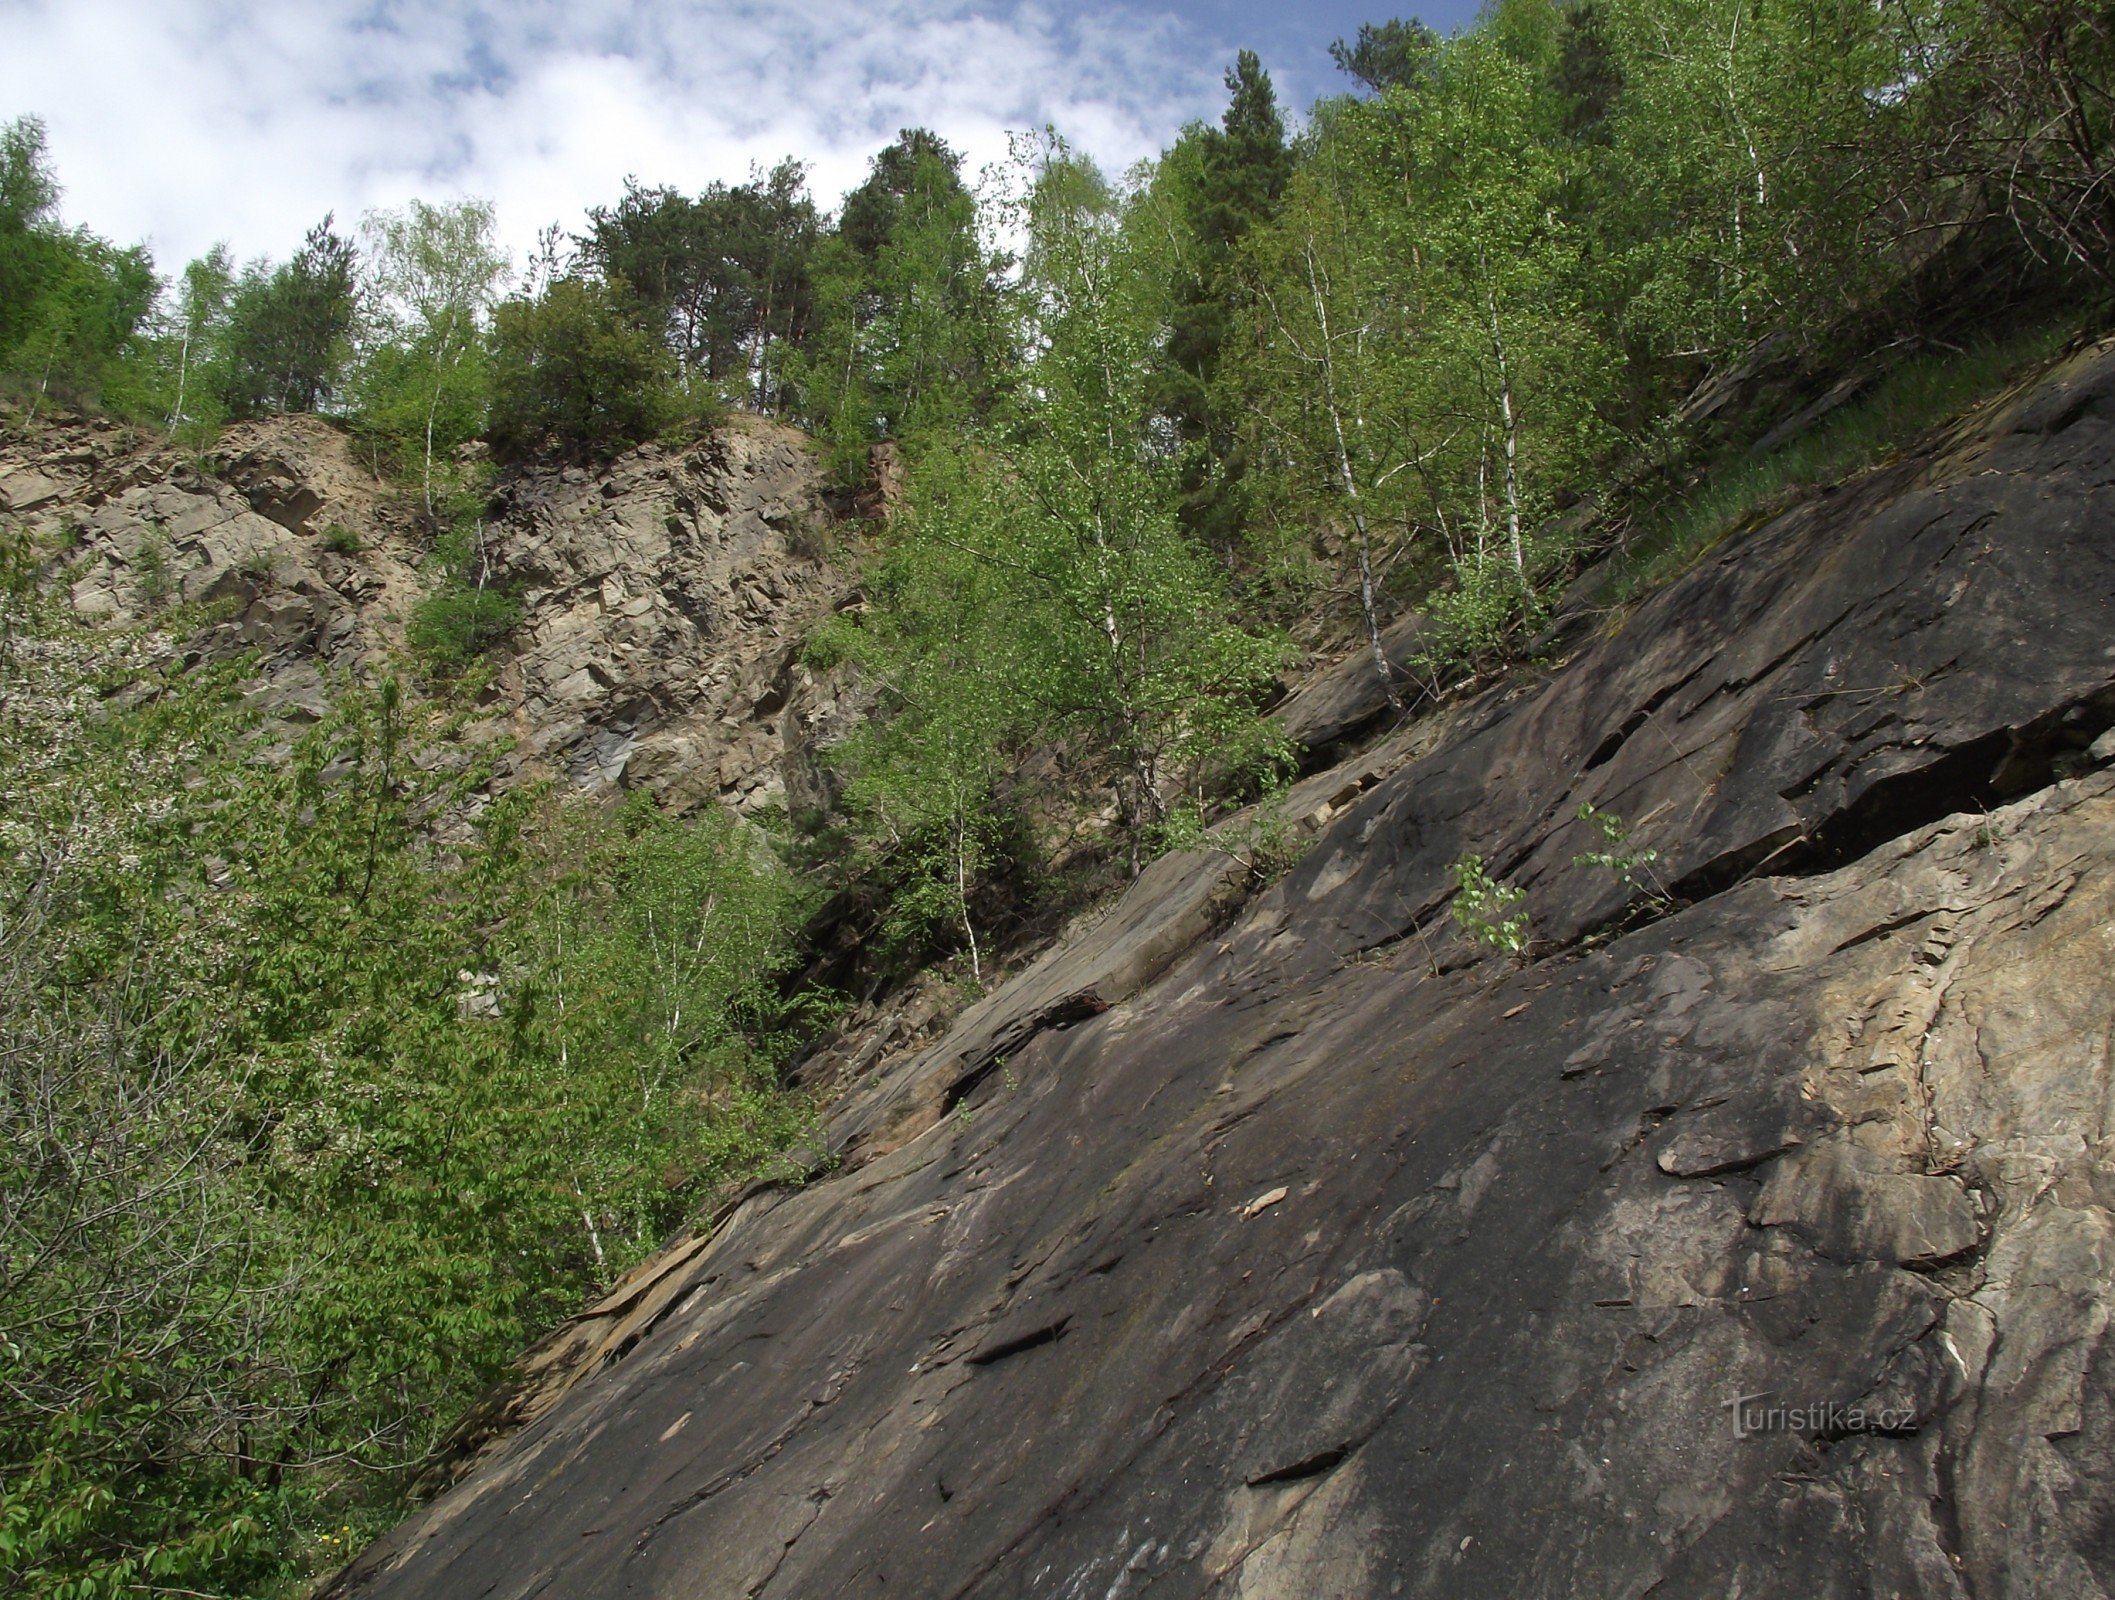 Bohutín – quarry under Burdový vrch